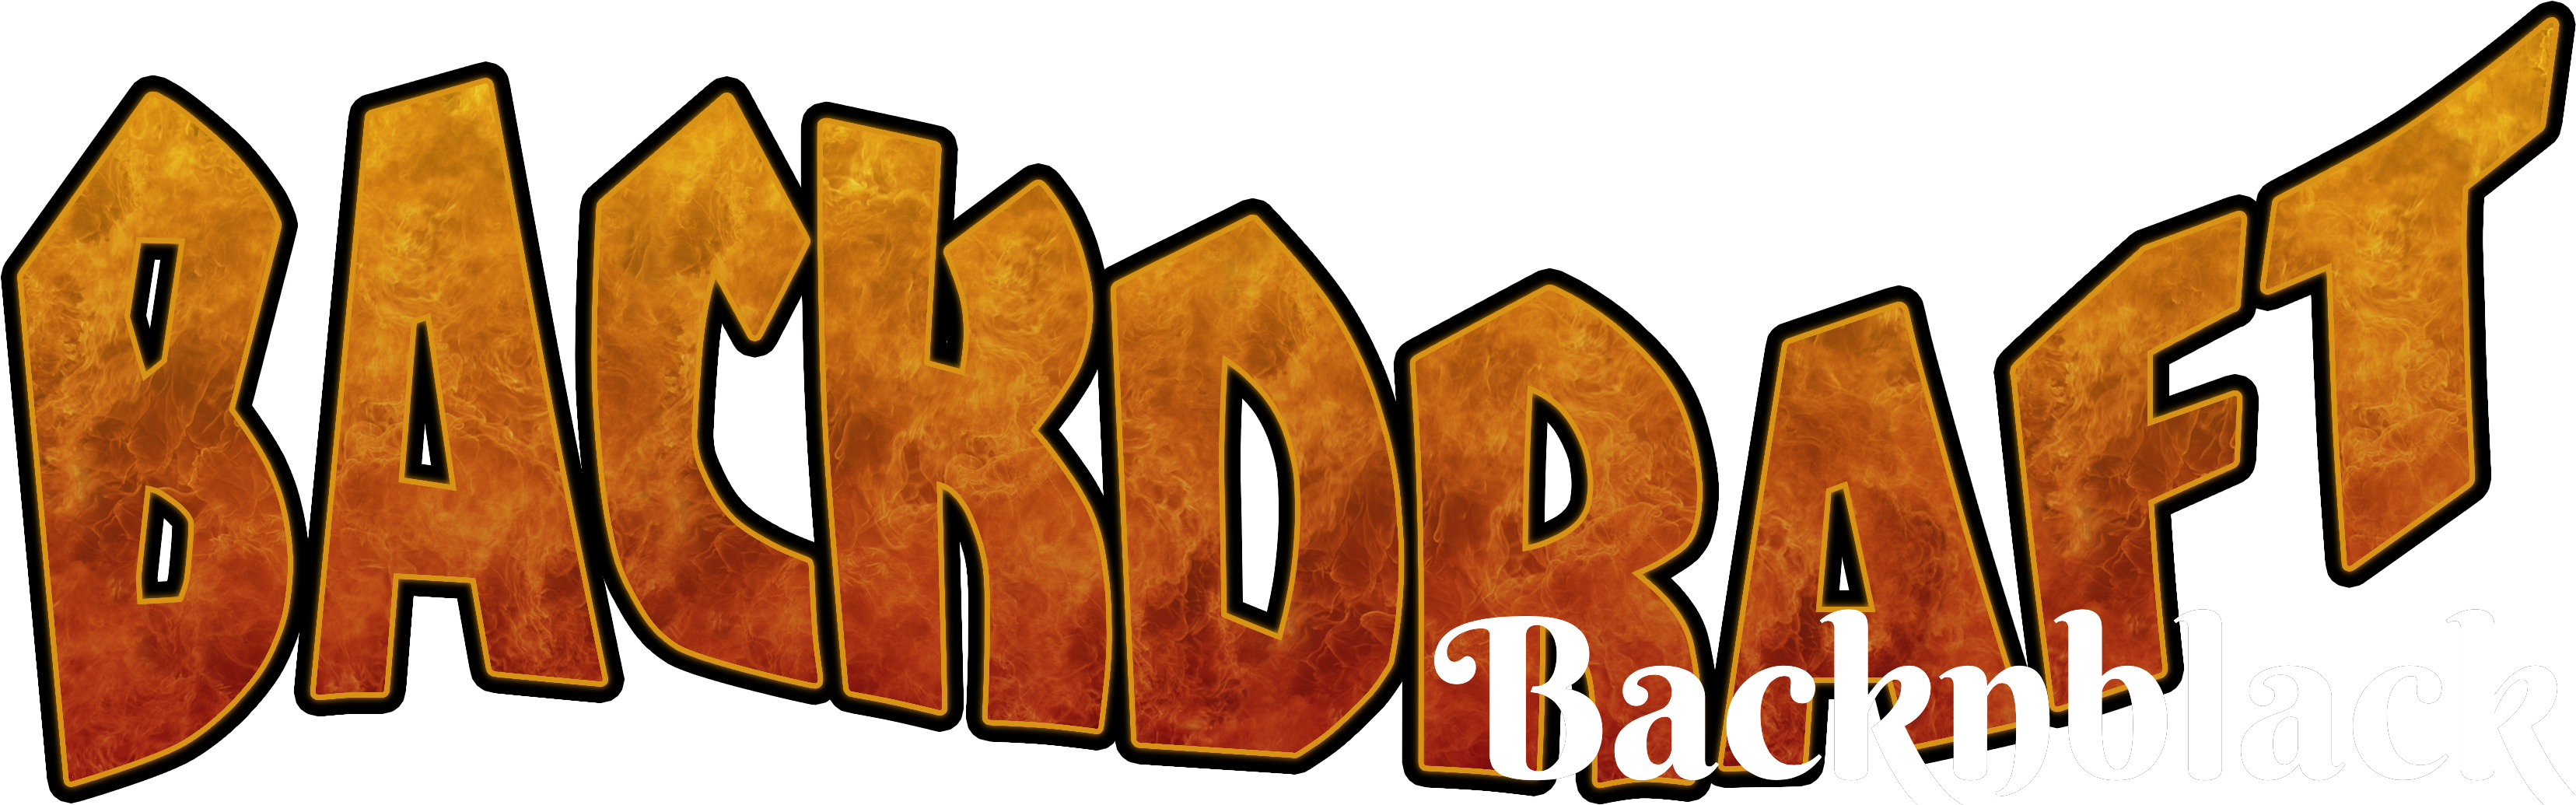 Backdraft logo